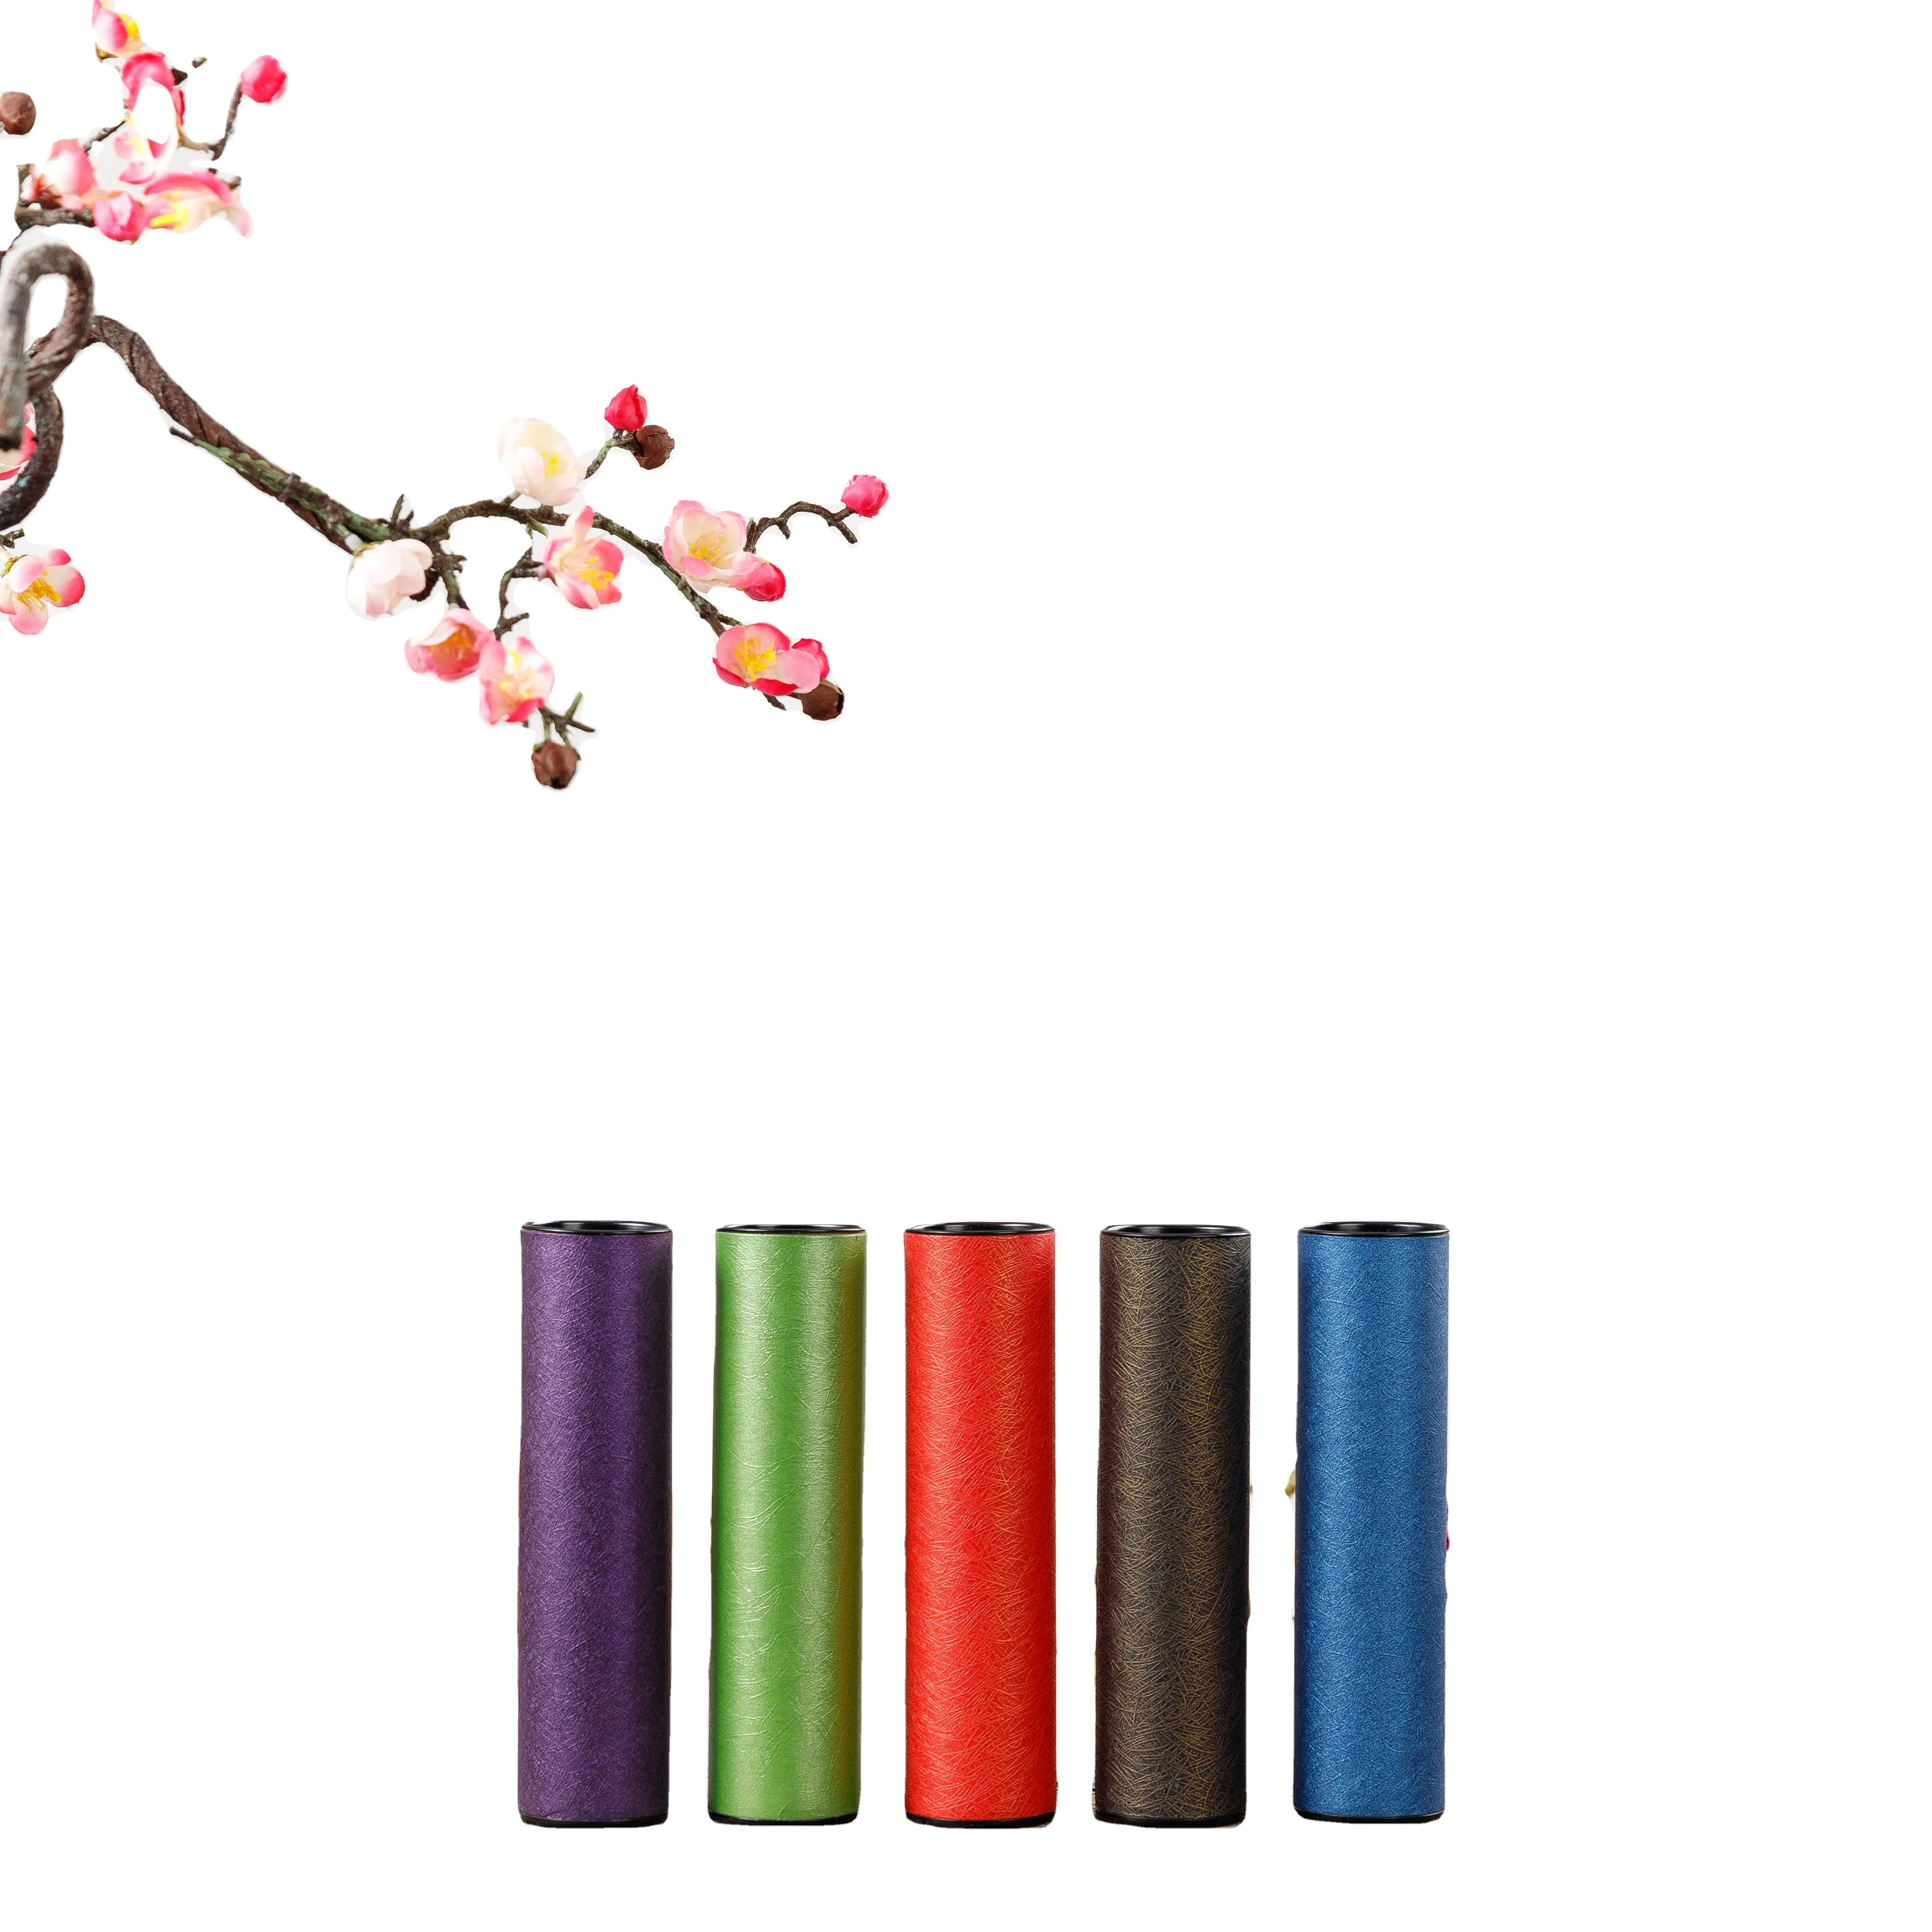 TianYi 포장 사용자 정의 핫 스탬핑 실린더 판지 차 상자 포장 빈 화장품 크레페 고품질 다채로운 종이 튜브